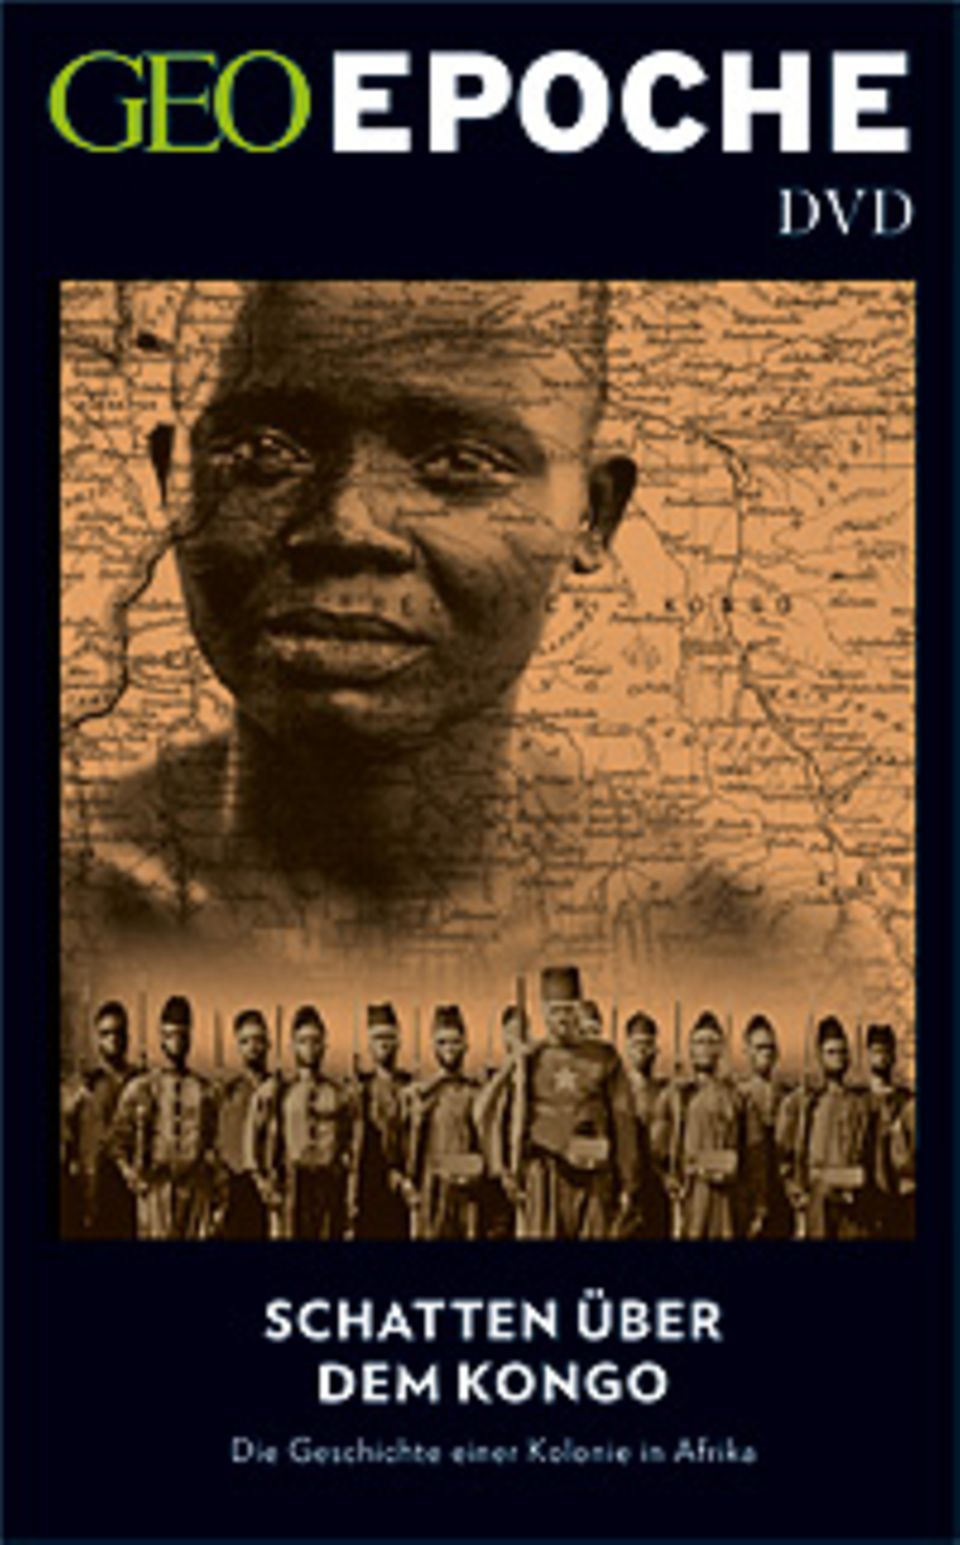 Afrika: GEOEPOCHE "Arfika" ist auch mit DVD erhältlich